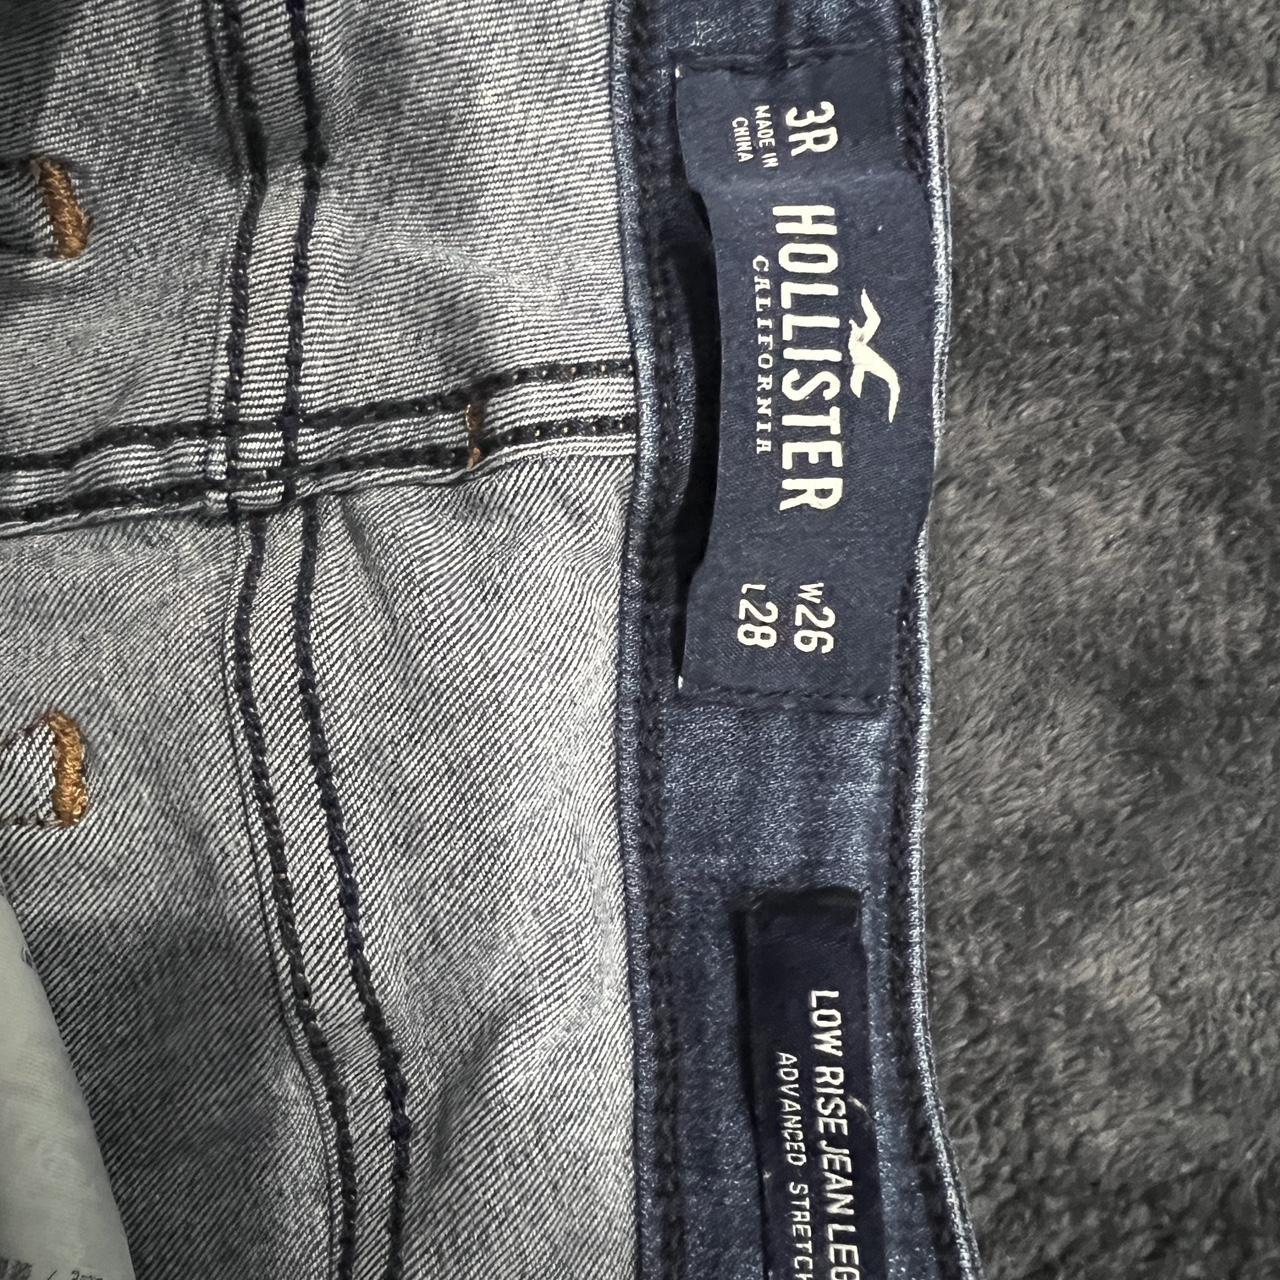 Hollister Jeans Low rise jean leggings Size: 3 - Depop